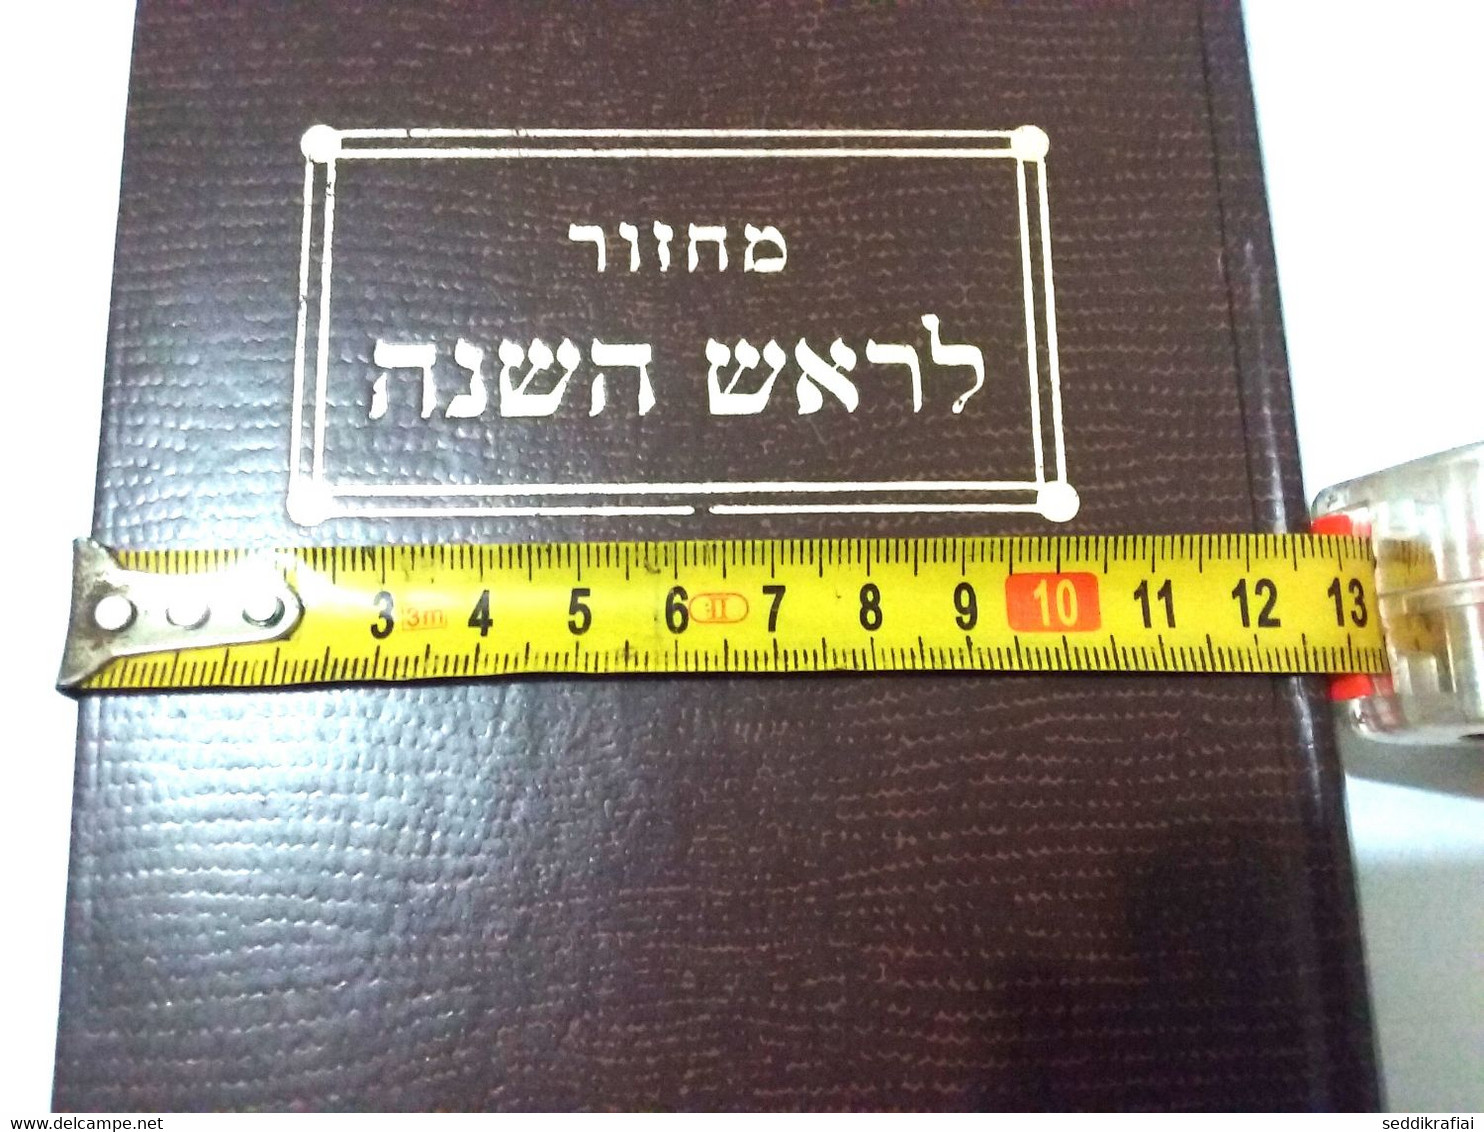 old book Jewish hatarat nedarim arbit rosh hashna kiddoush paracha shofar mossaf minha, vitaslikh, sahrit tsom guedalia